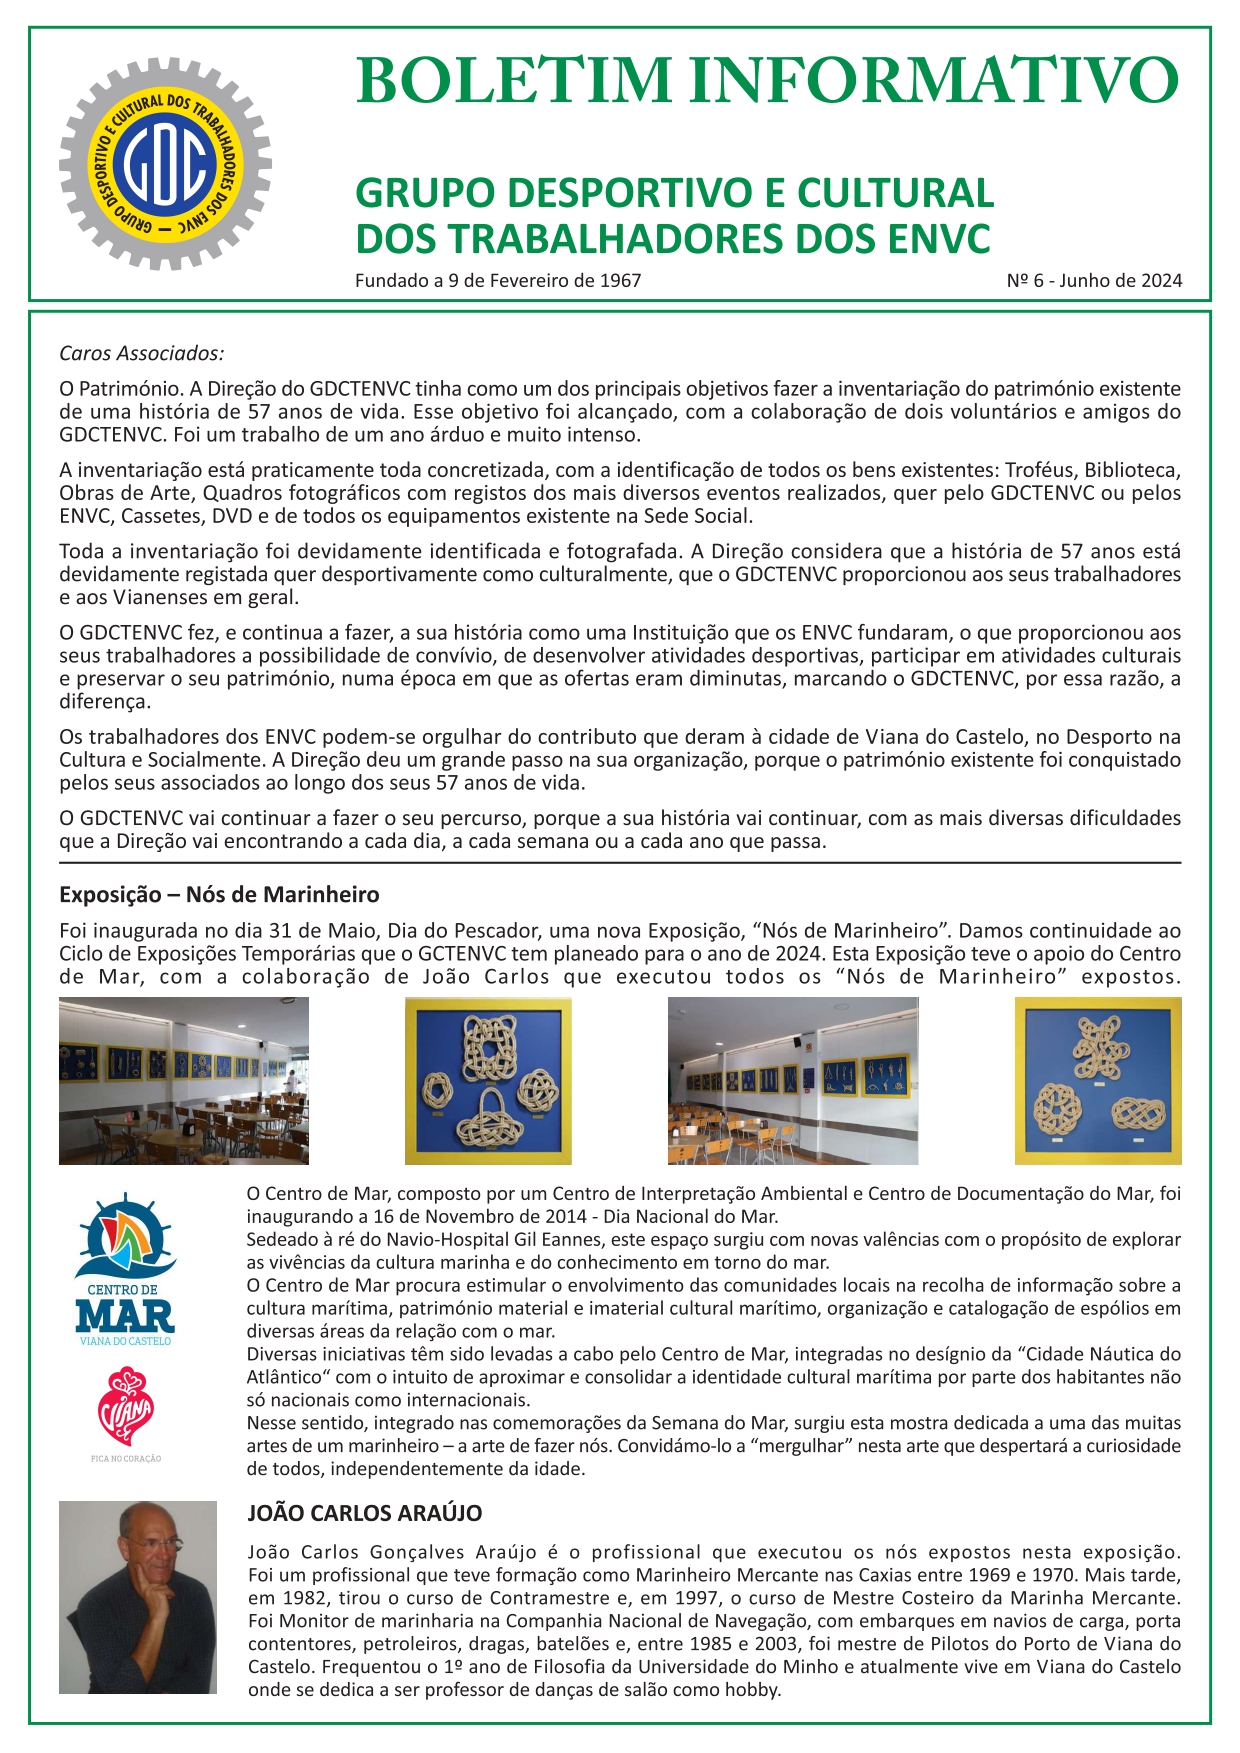 Boletim informativo GDCTENVC – Nº6 / Junho 2024